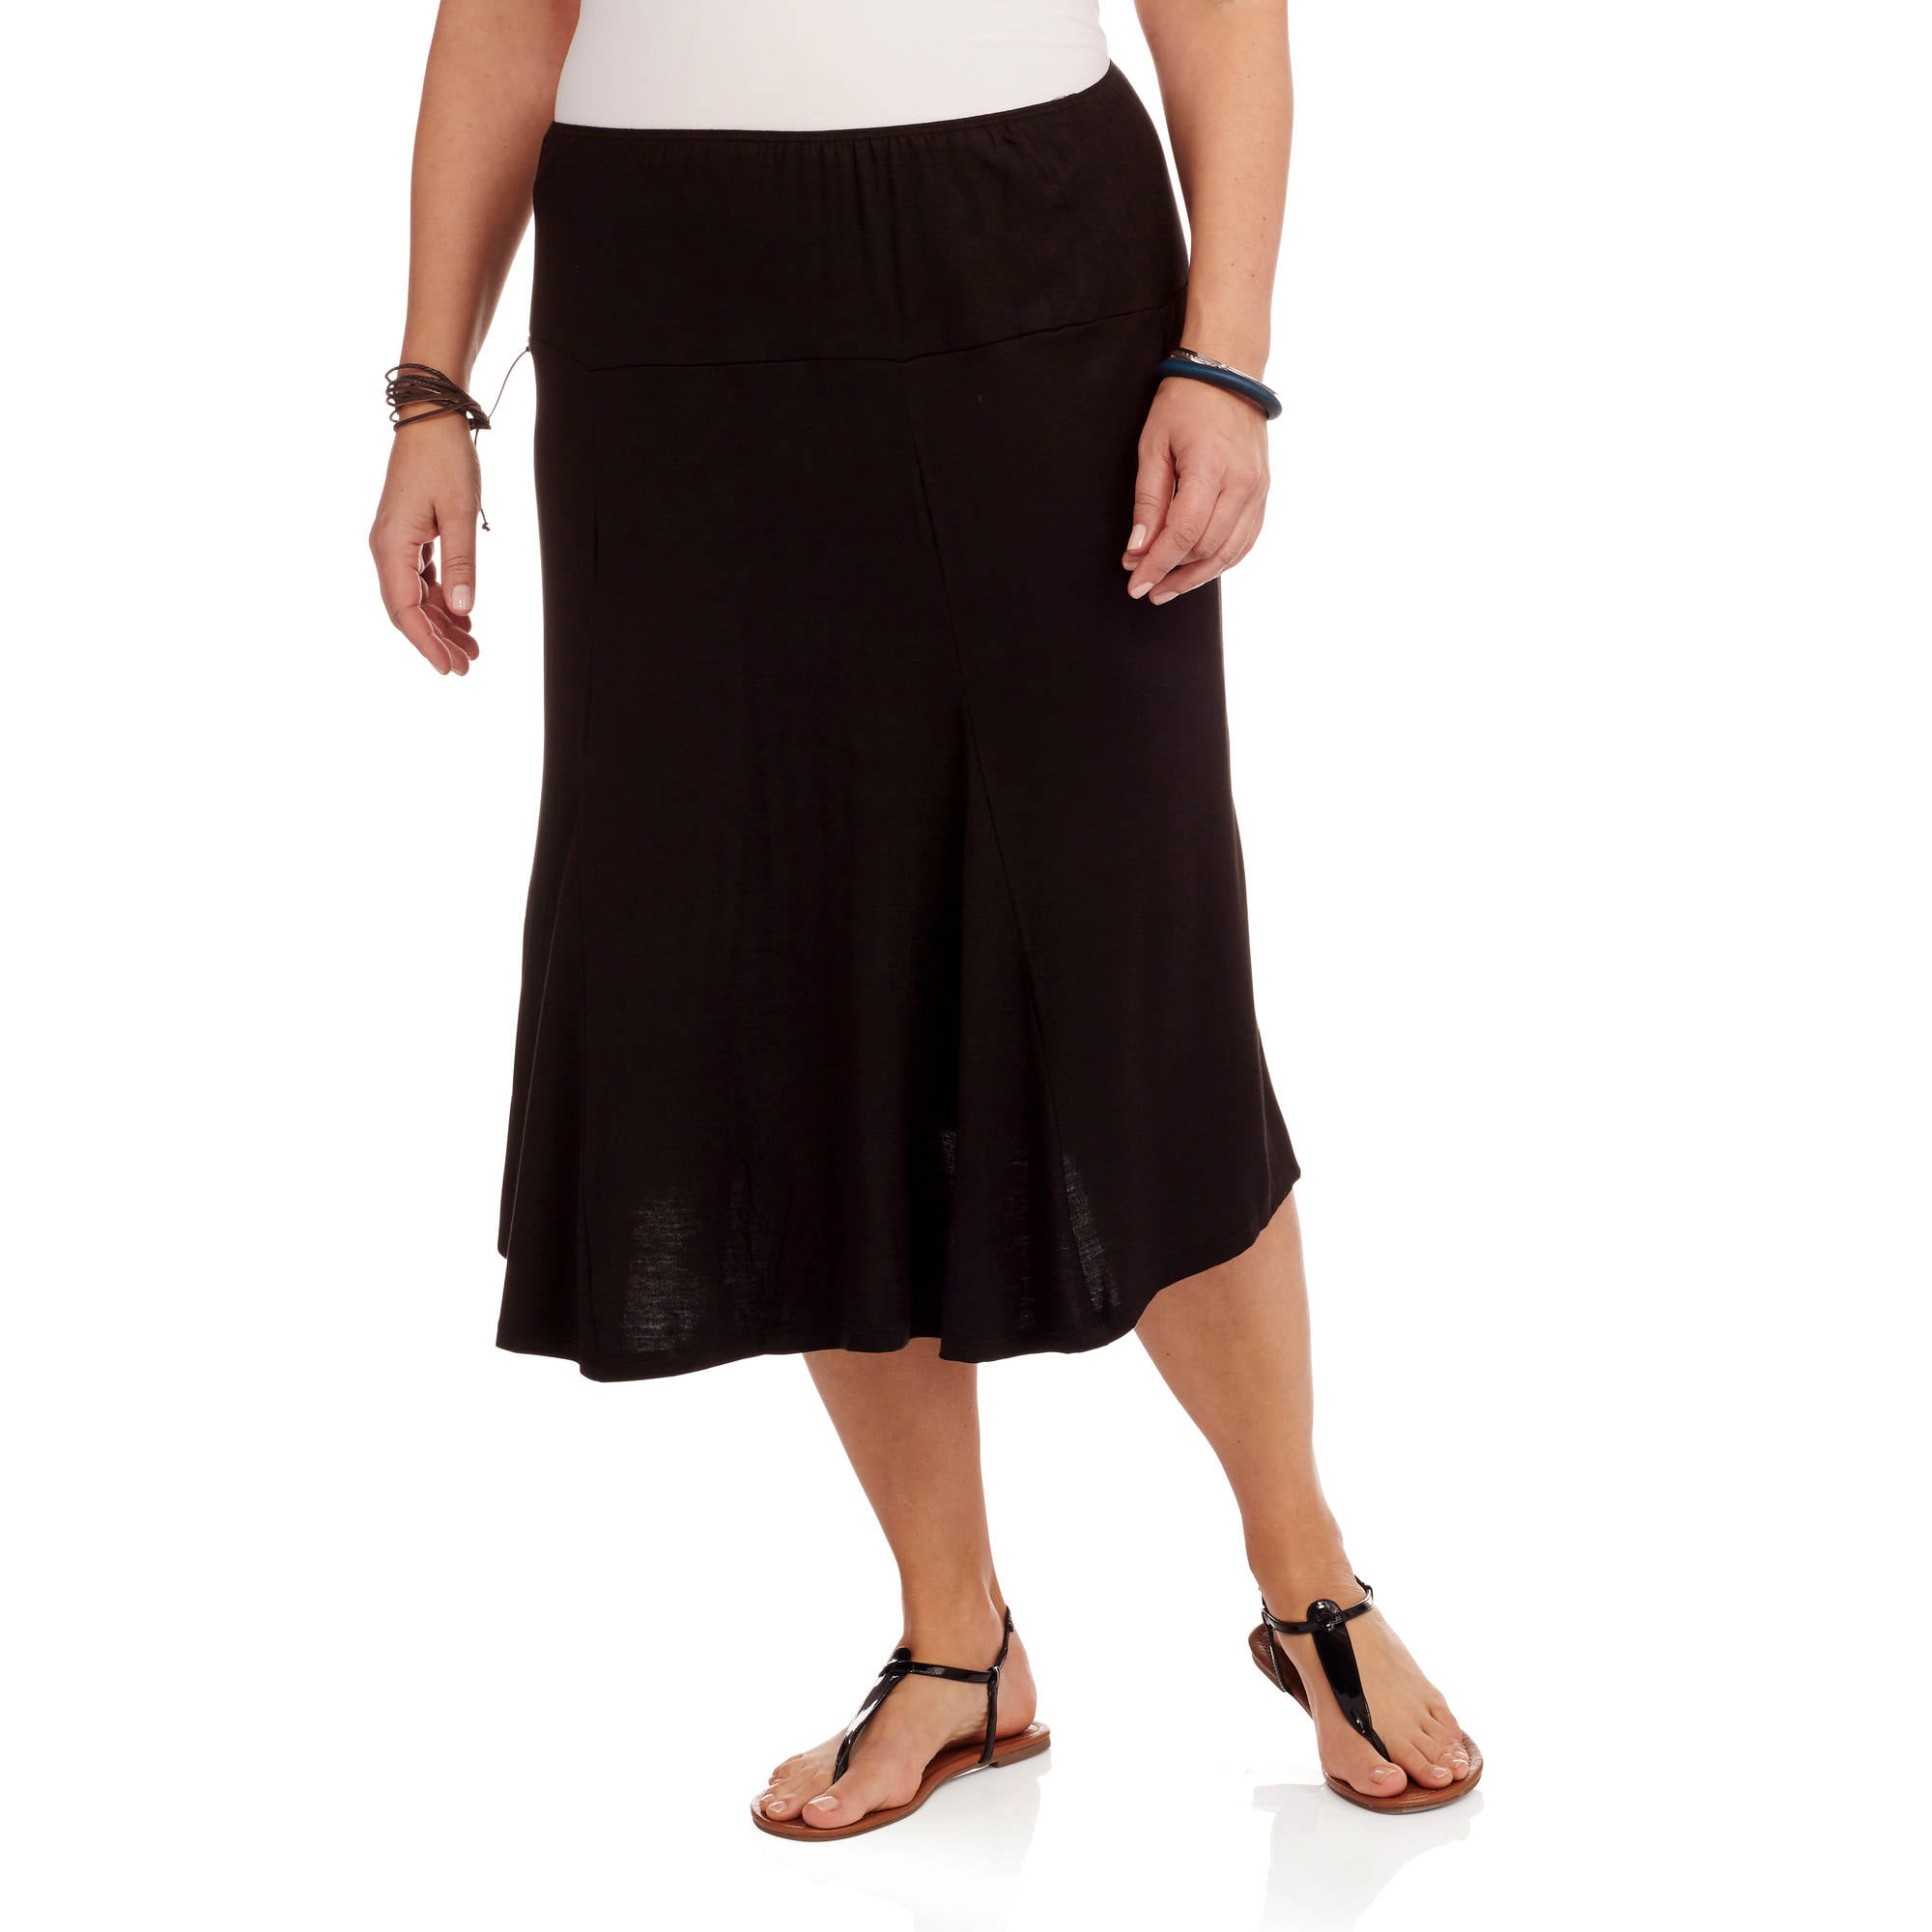 Plus Size Women's Calf-Length Skirt - Walmart.com